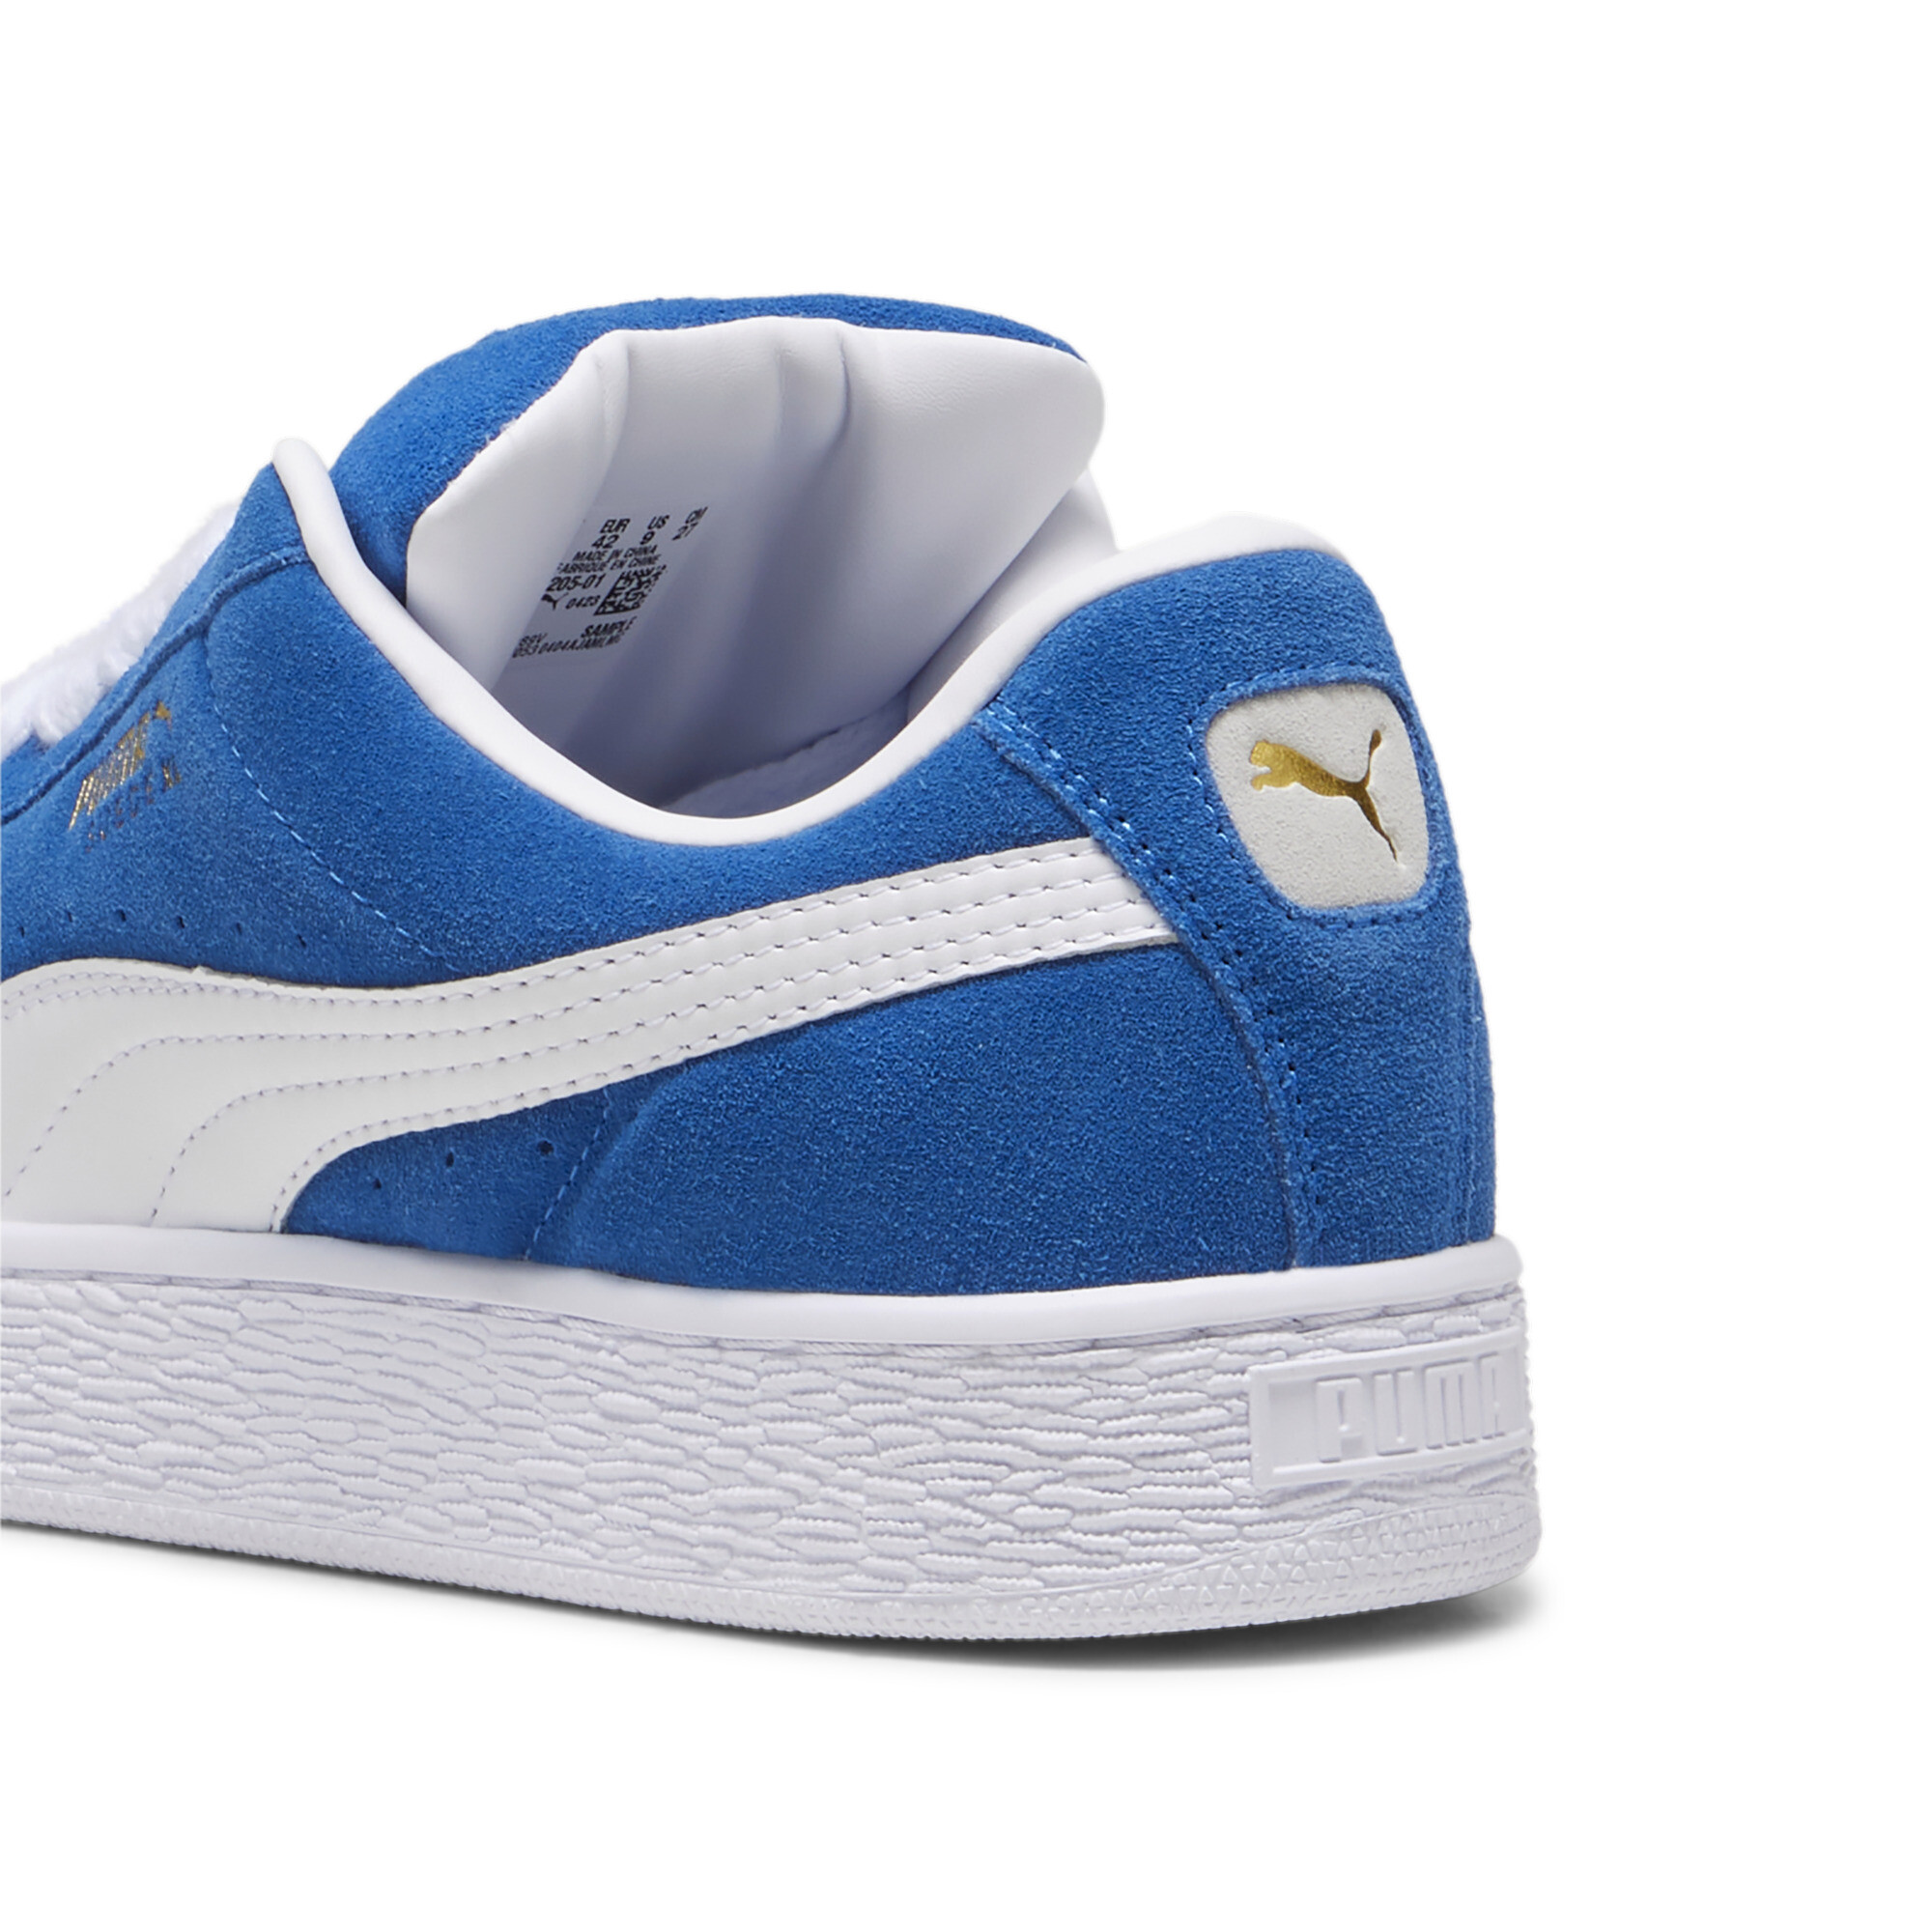 Puma Suede XL Sneakers Unisex, Blue, Size 36, Shoes